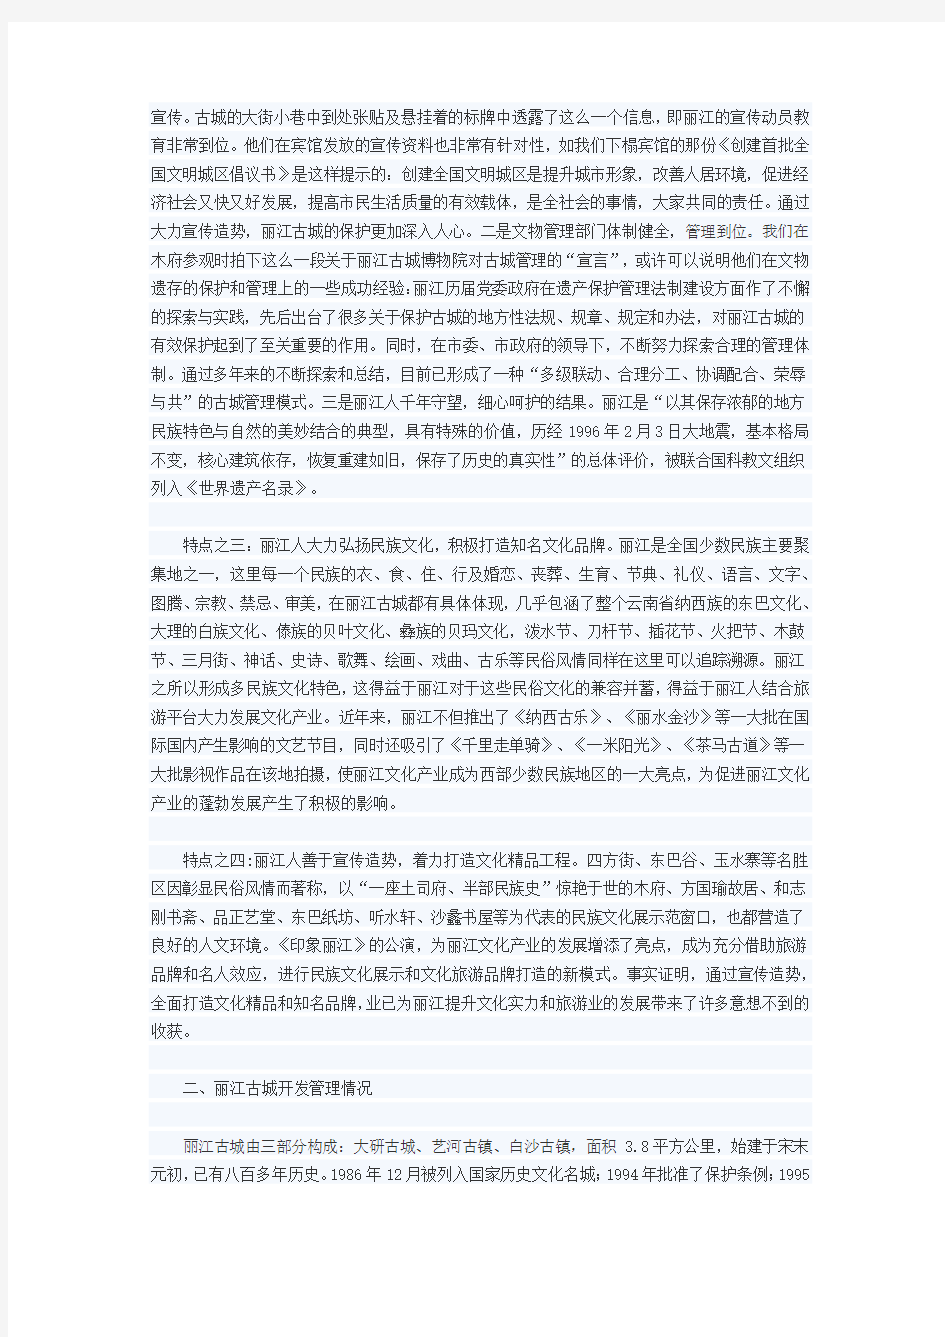 关于对丽江古城打造文化旅游产业的调研报告